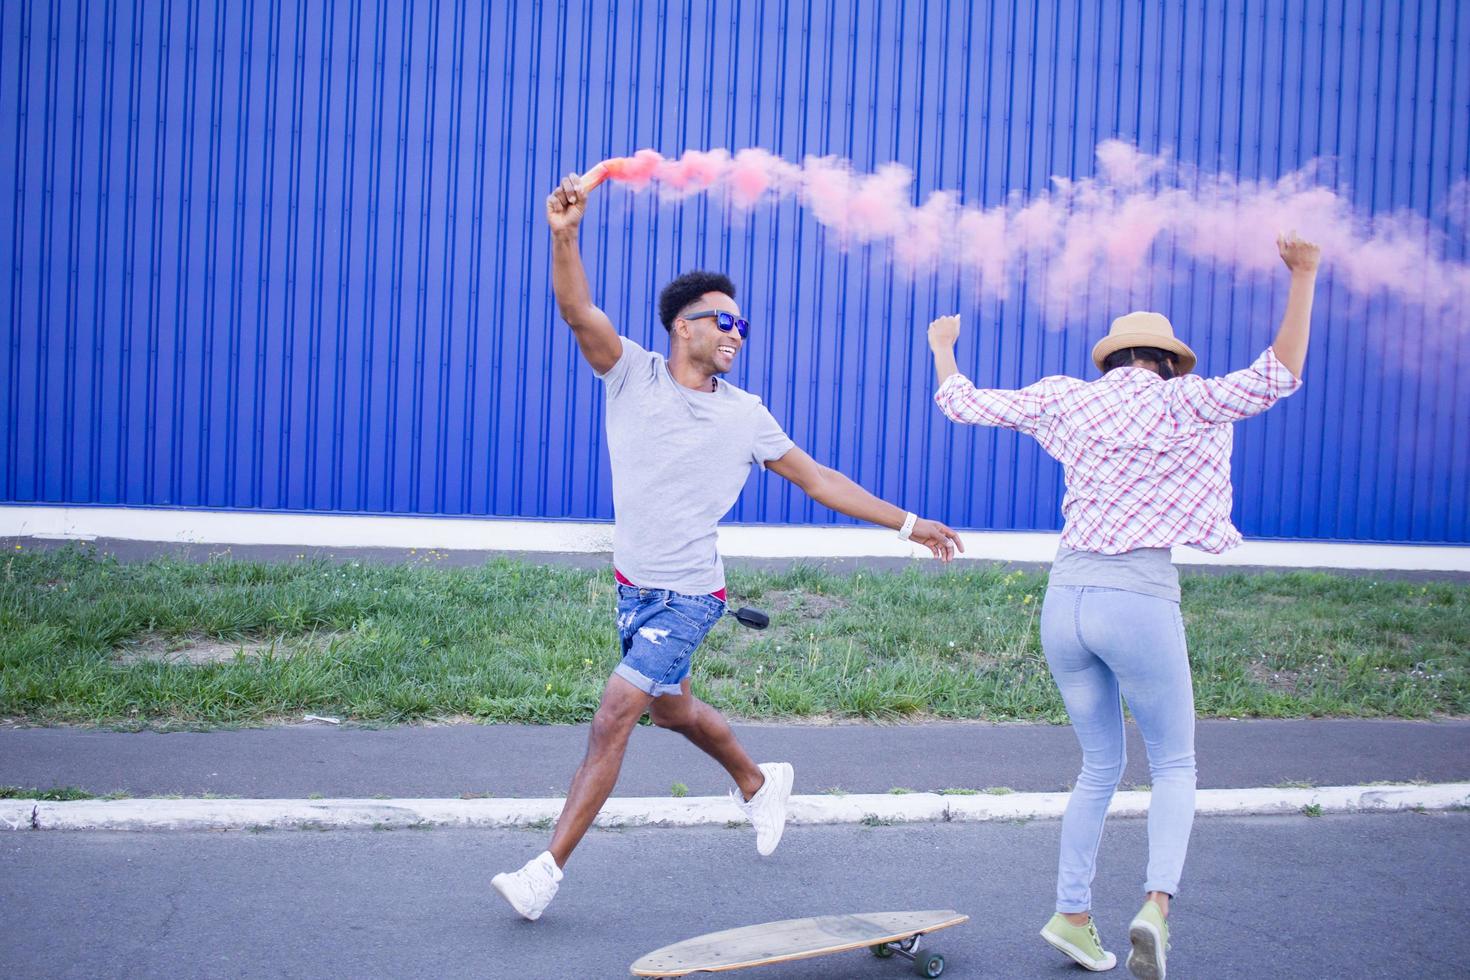 giovane coppia in sella a skateboard con fumogeno colorato, ragazzo e ragazza in abiti casual che si divertono, colori rosa e blu foto